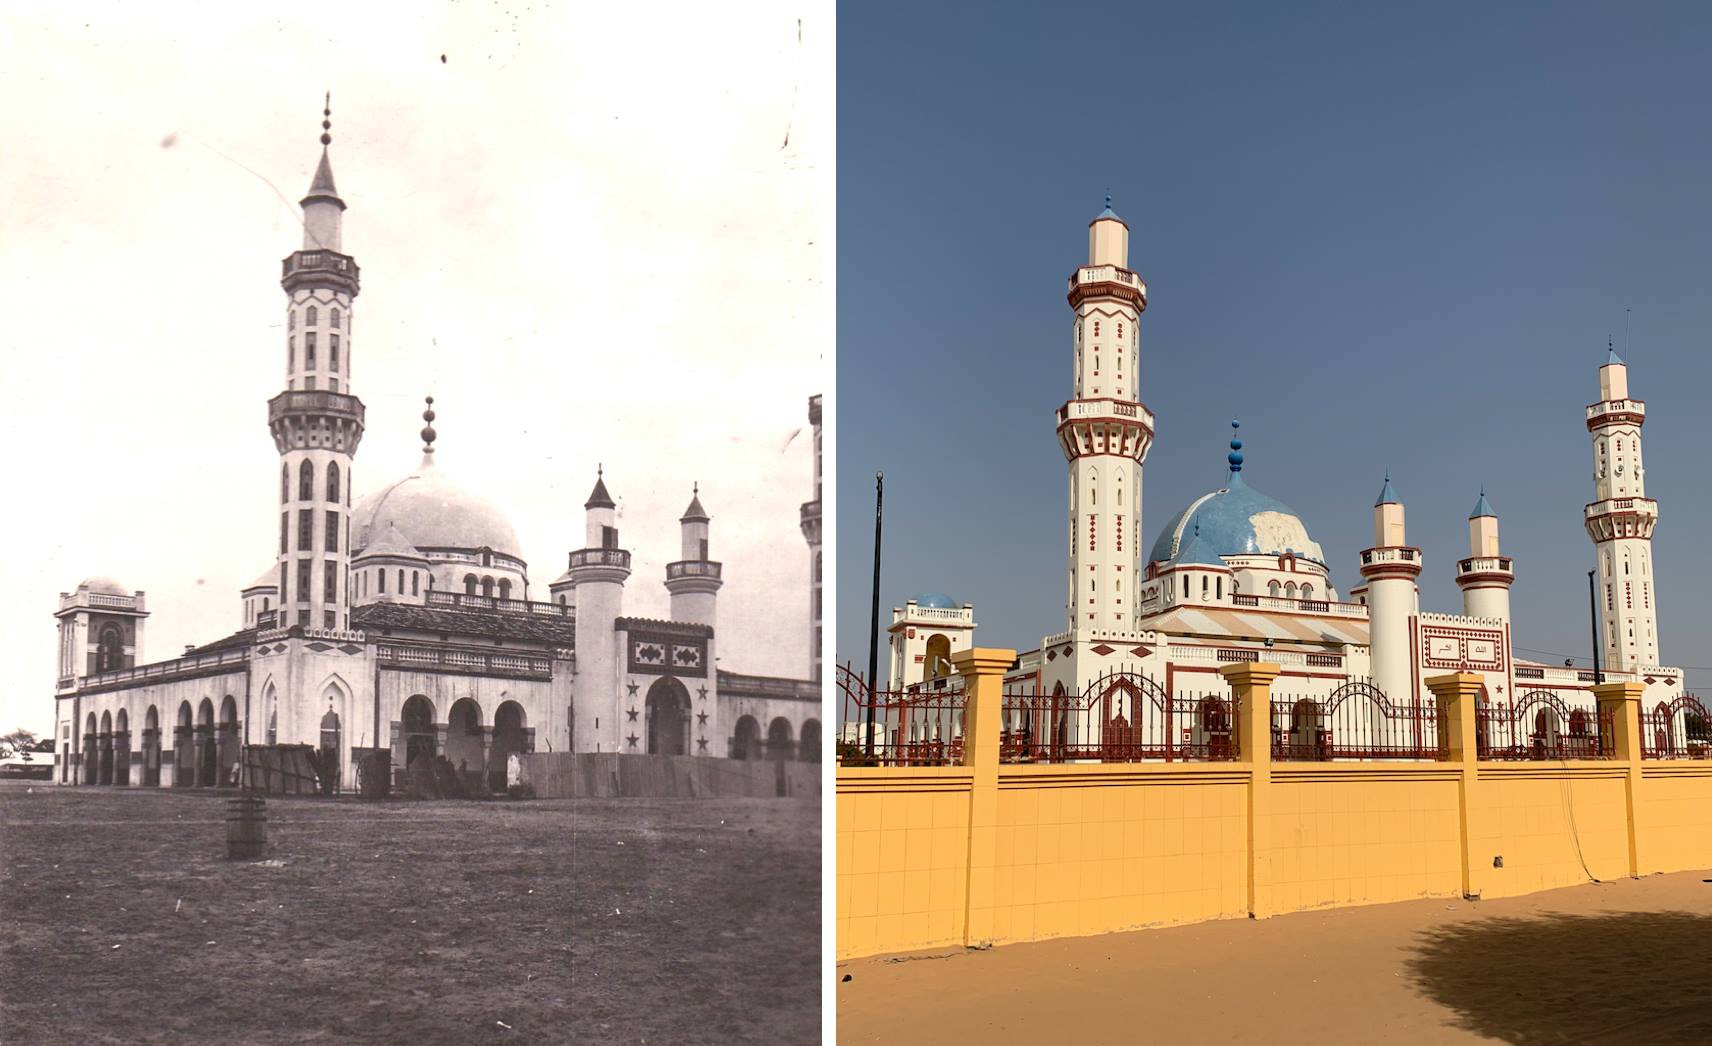 La Grande mosquée de Diourbel est un monument majestueux inspirée de la mosquée bleue d’Istambul. Sa construction a été entreprise par le Cheikh Ahmadou Bamba en 1918 et achevée en 1925, soit 2 ans avant son décès. On la voit sur l’image de gauche au moment de son achèvement.